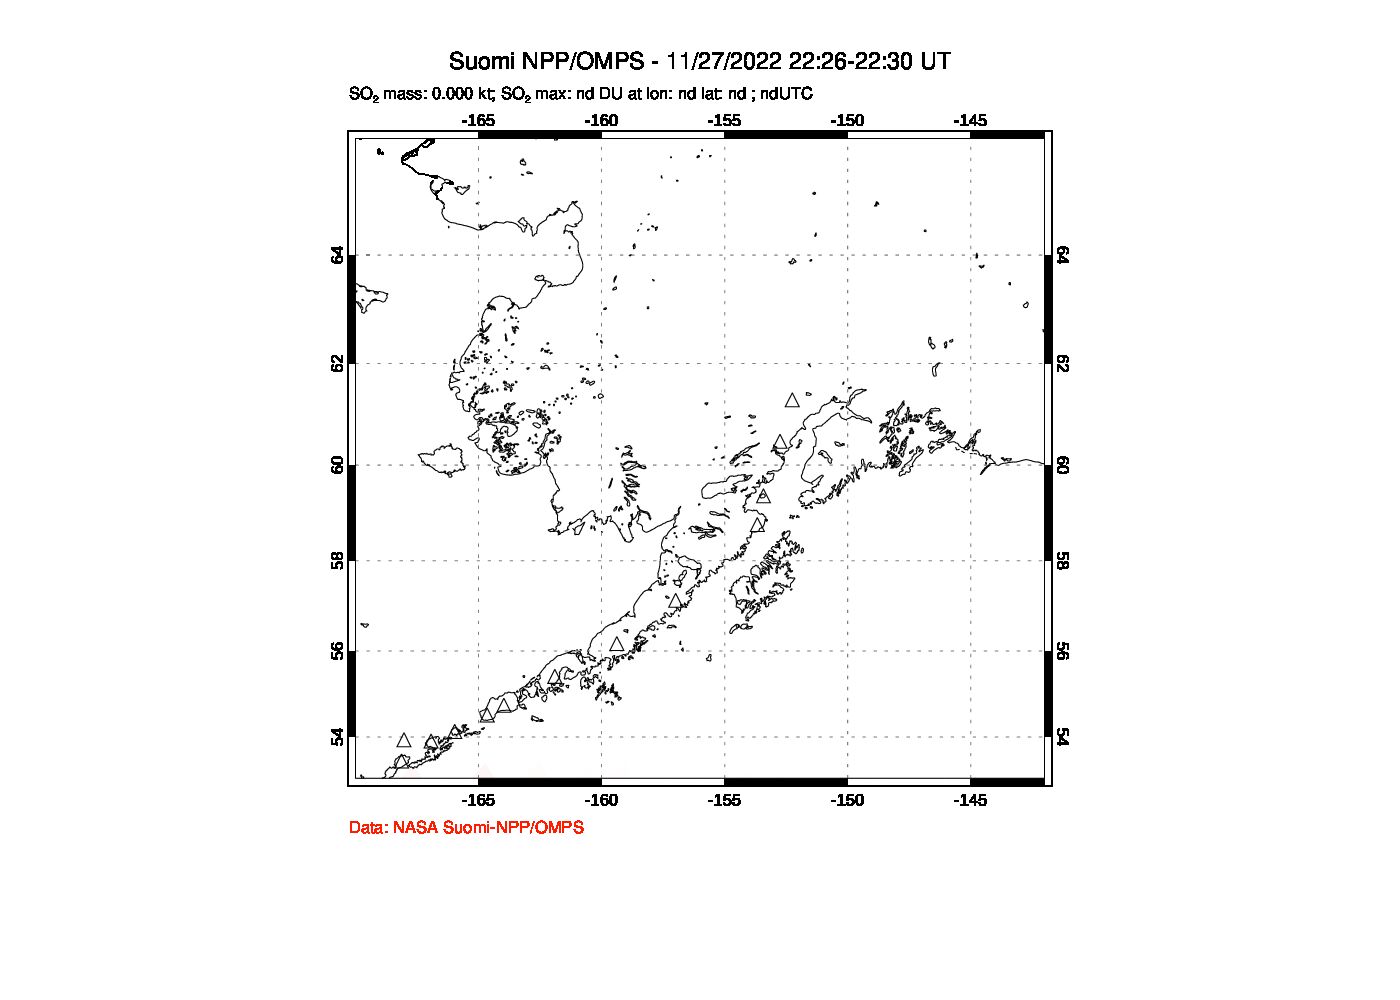 A sulfur dioxide image over Alaska, USA on Nov 27, 2022.